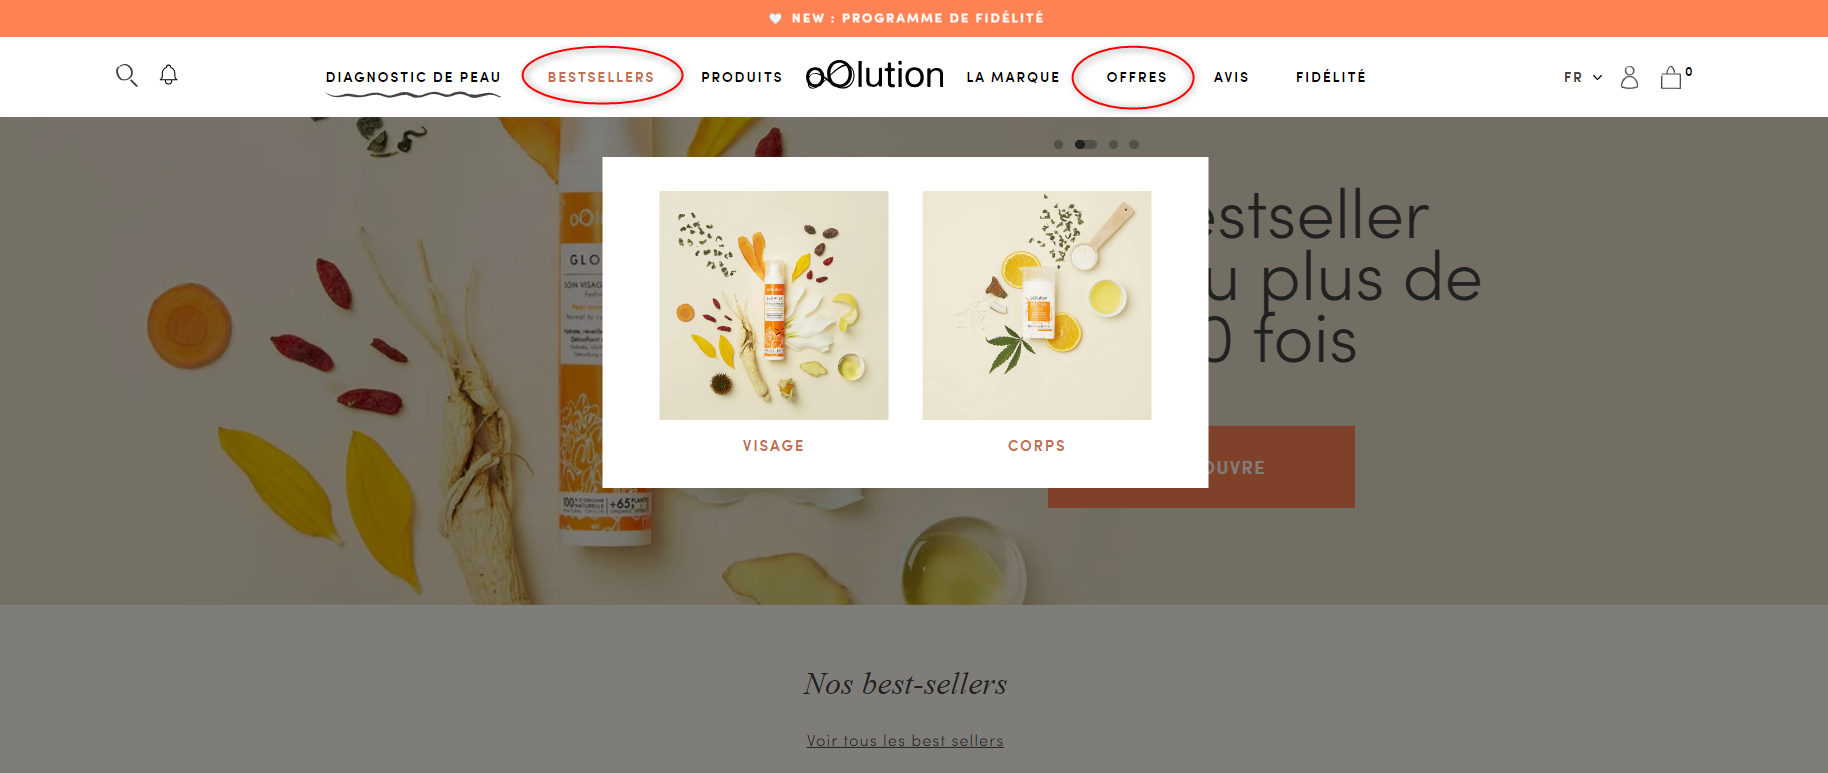 oOlution optimise la navigation des visiteurs en orientant les nouveaux clients vers ses produits les plus vendus ou vers sa page d’offre promotionnelle.